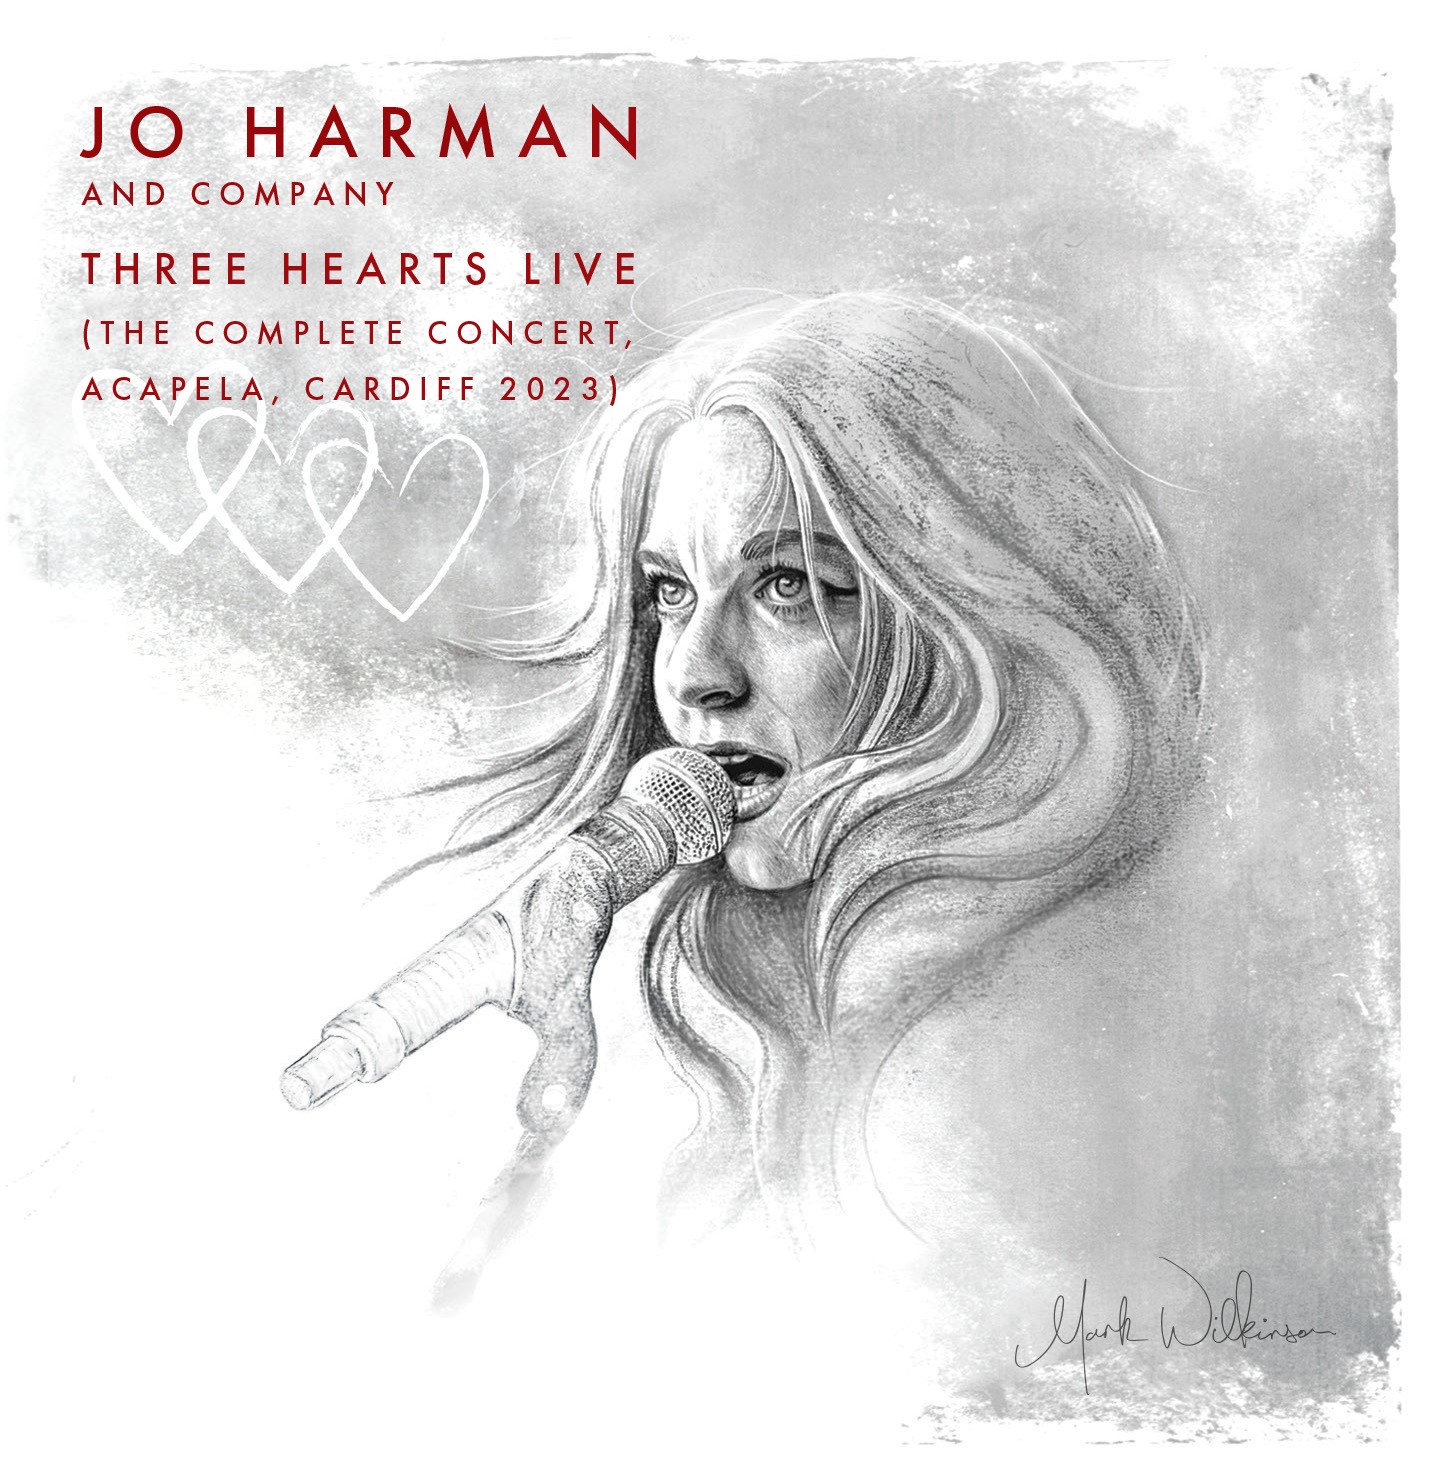 Jo Harman and Company - Three Hearts Live At Acapela, Cardiff